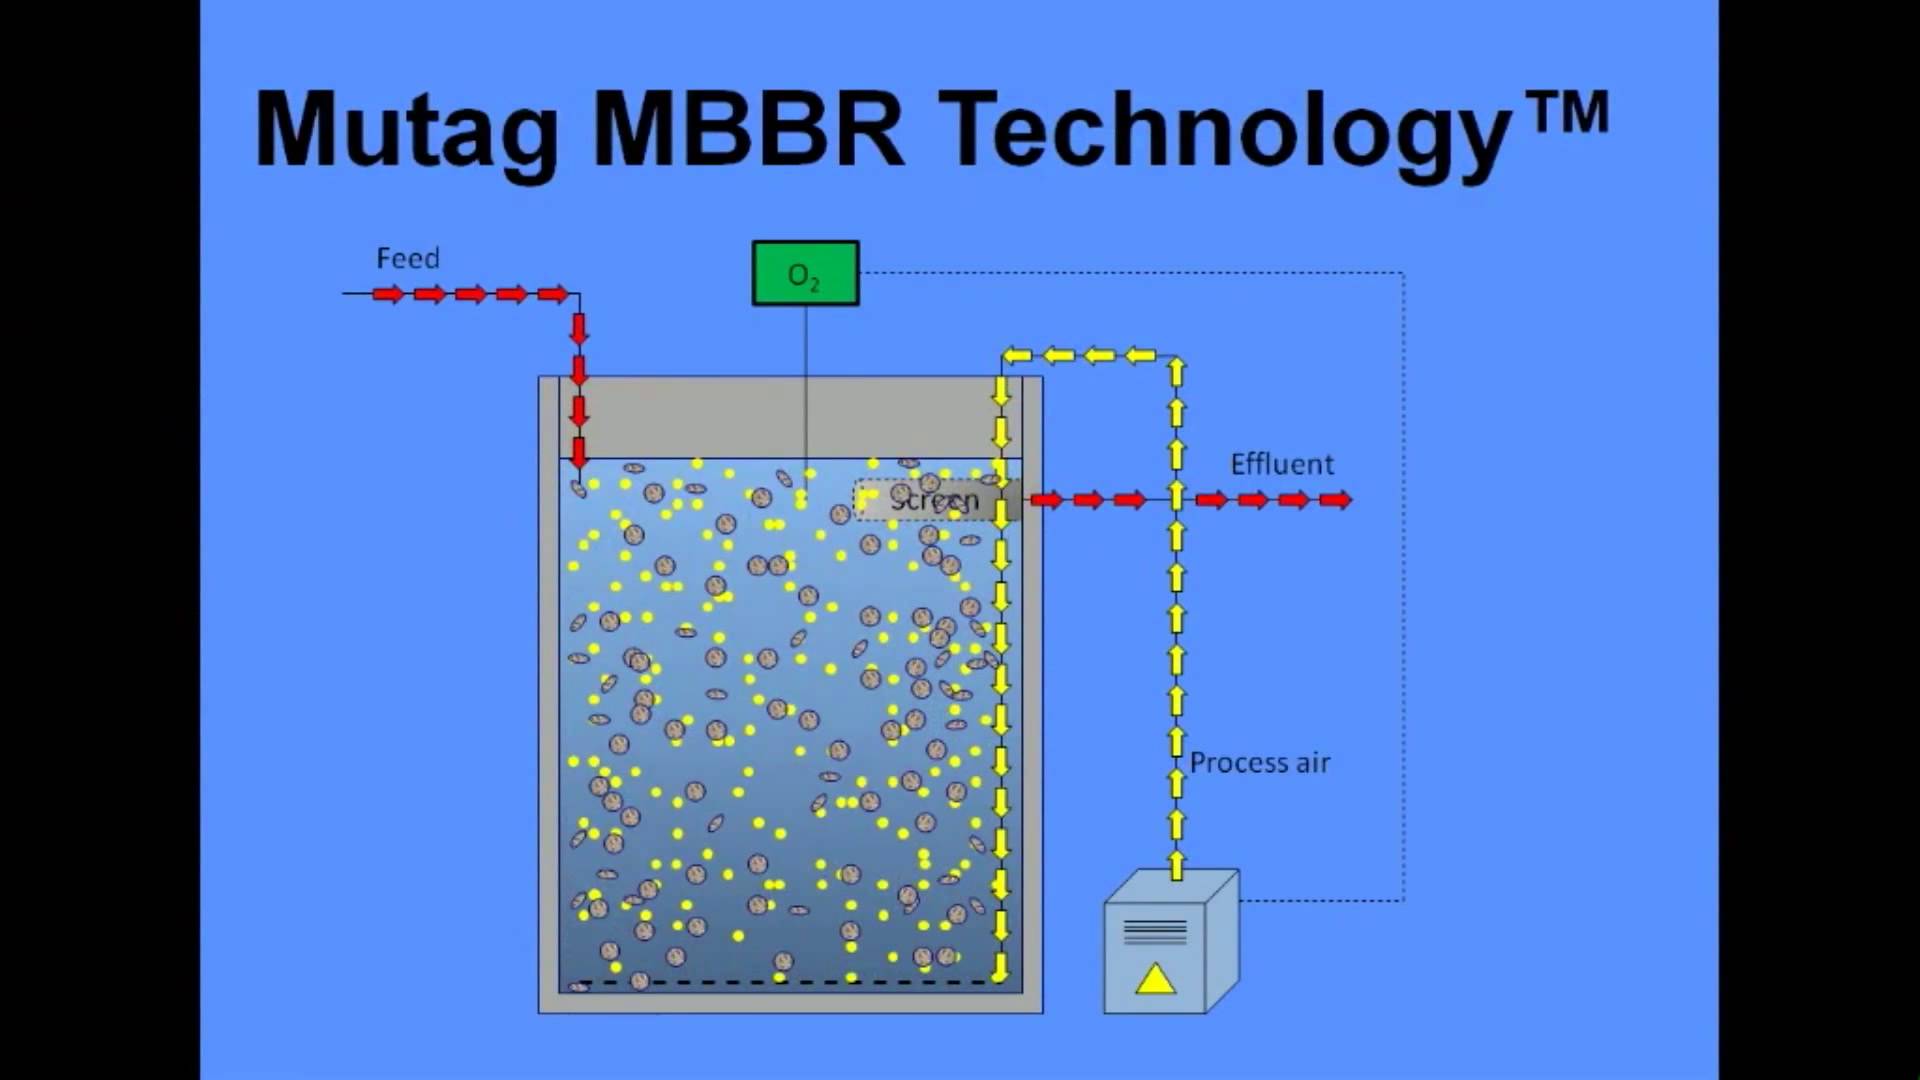 Công nghệ xử lý nước thải MBBR